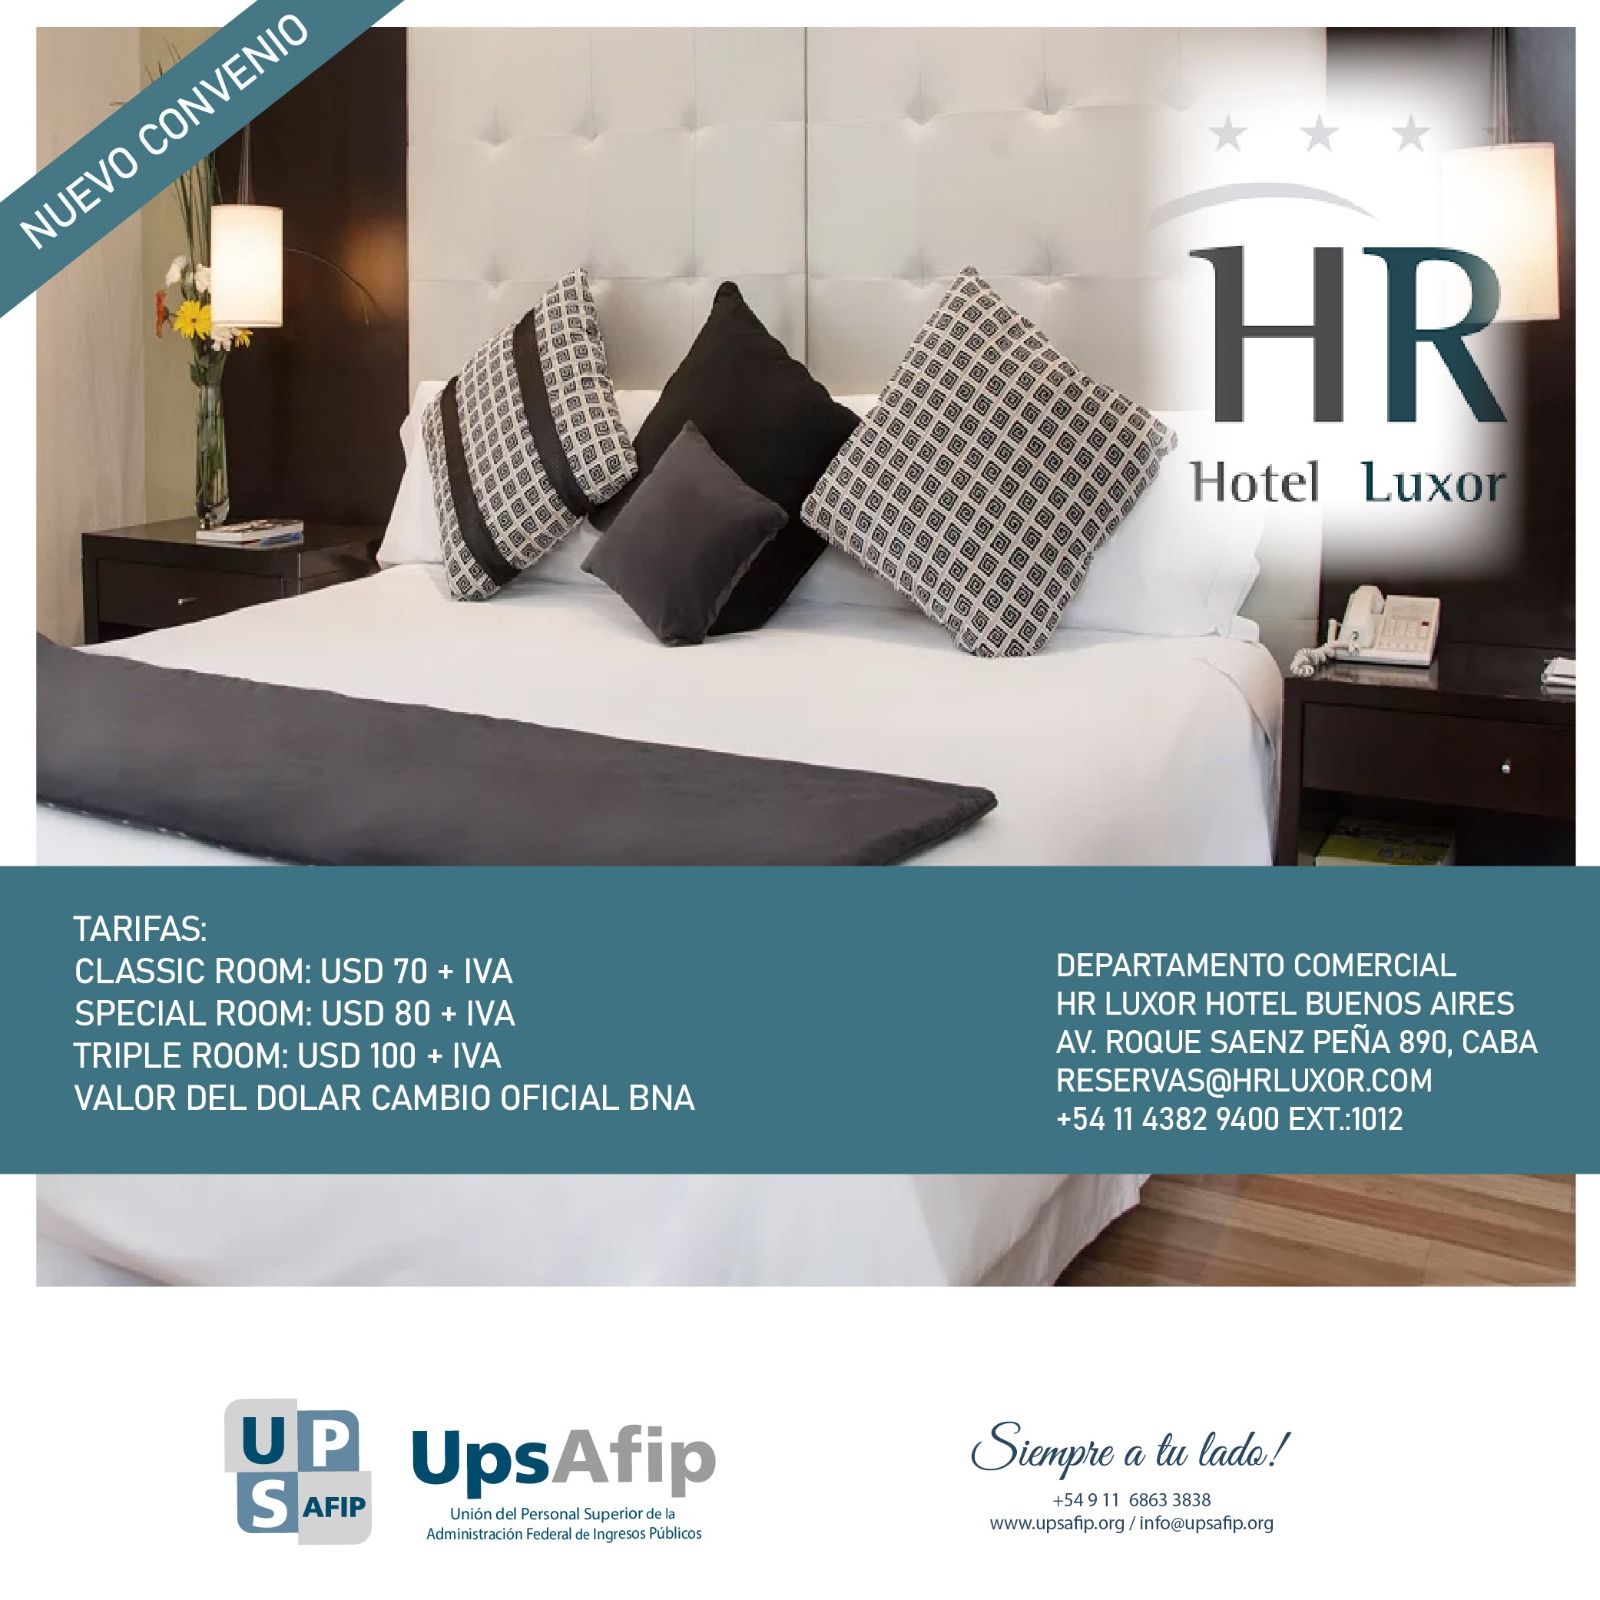 Nuevo convenio: HR Luxor Hotel Buenos Aires